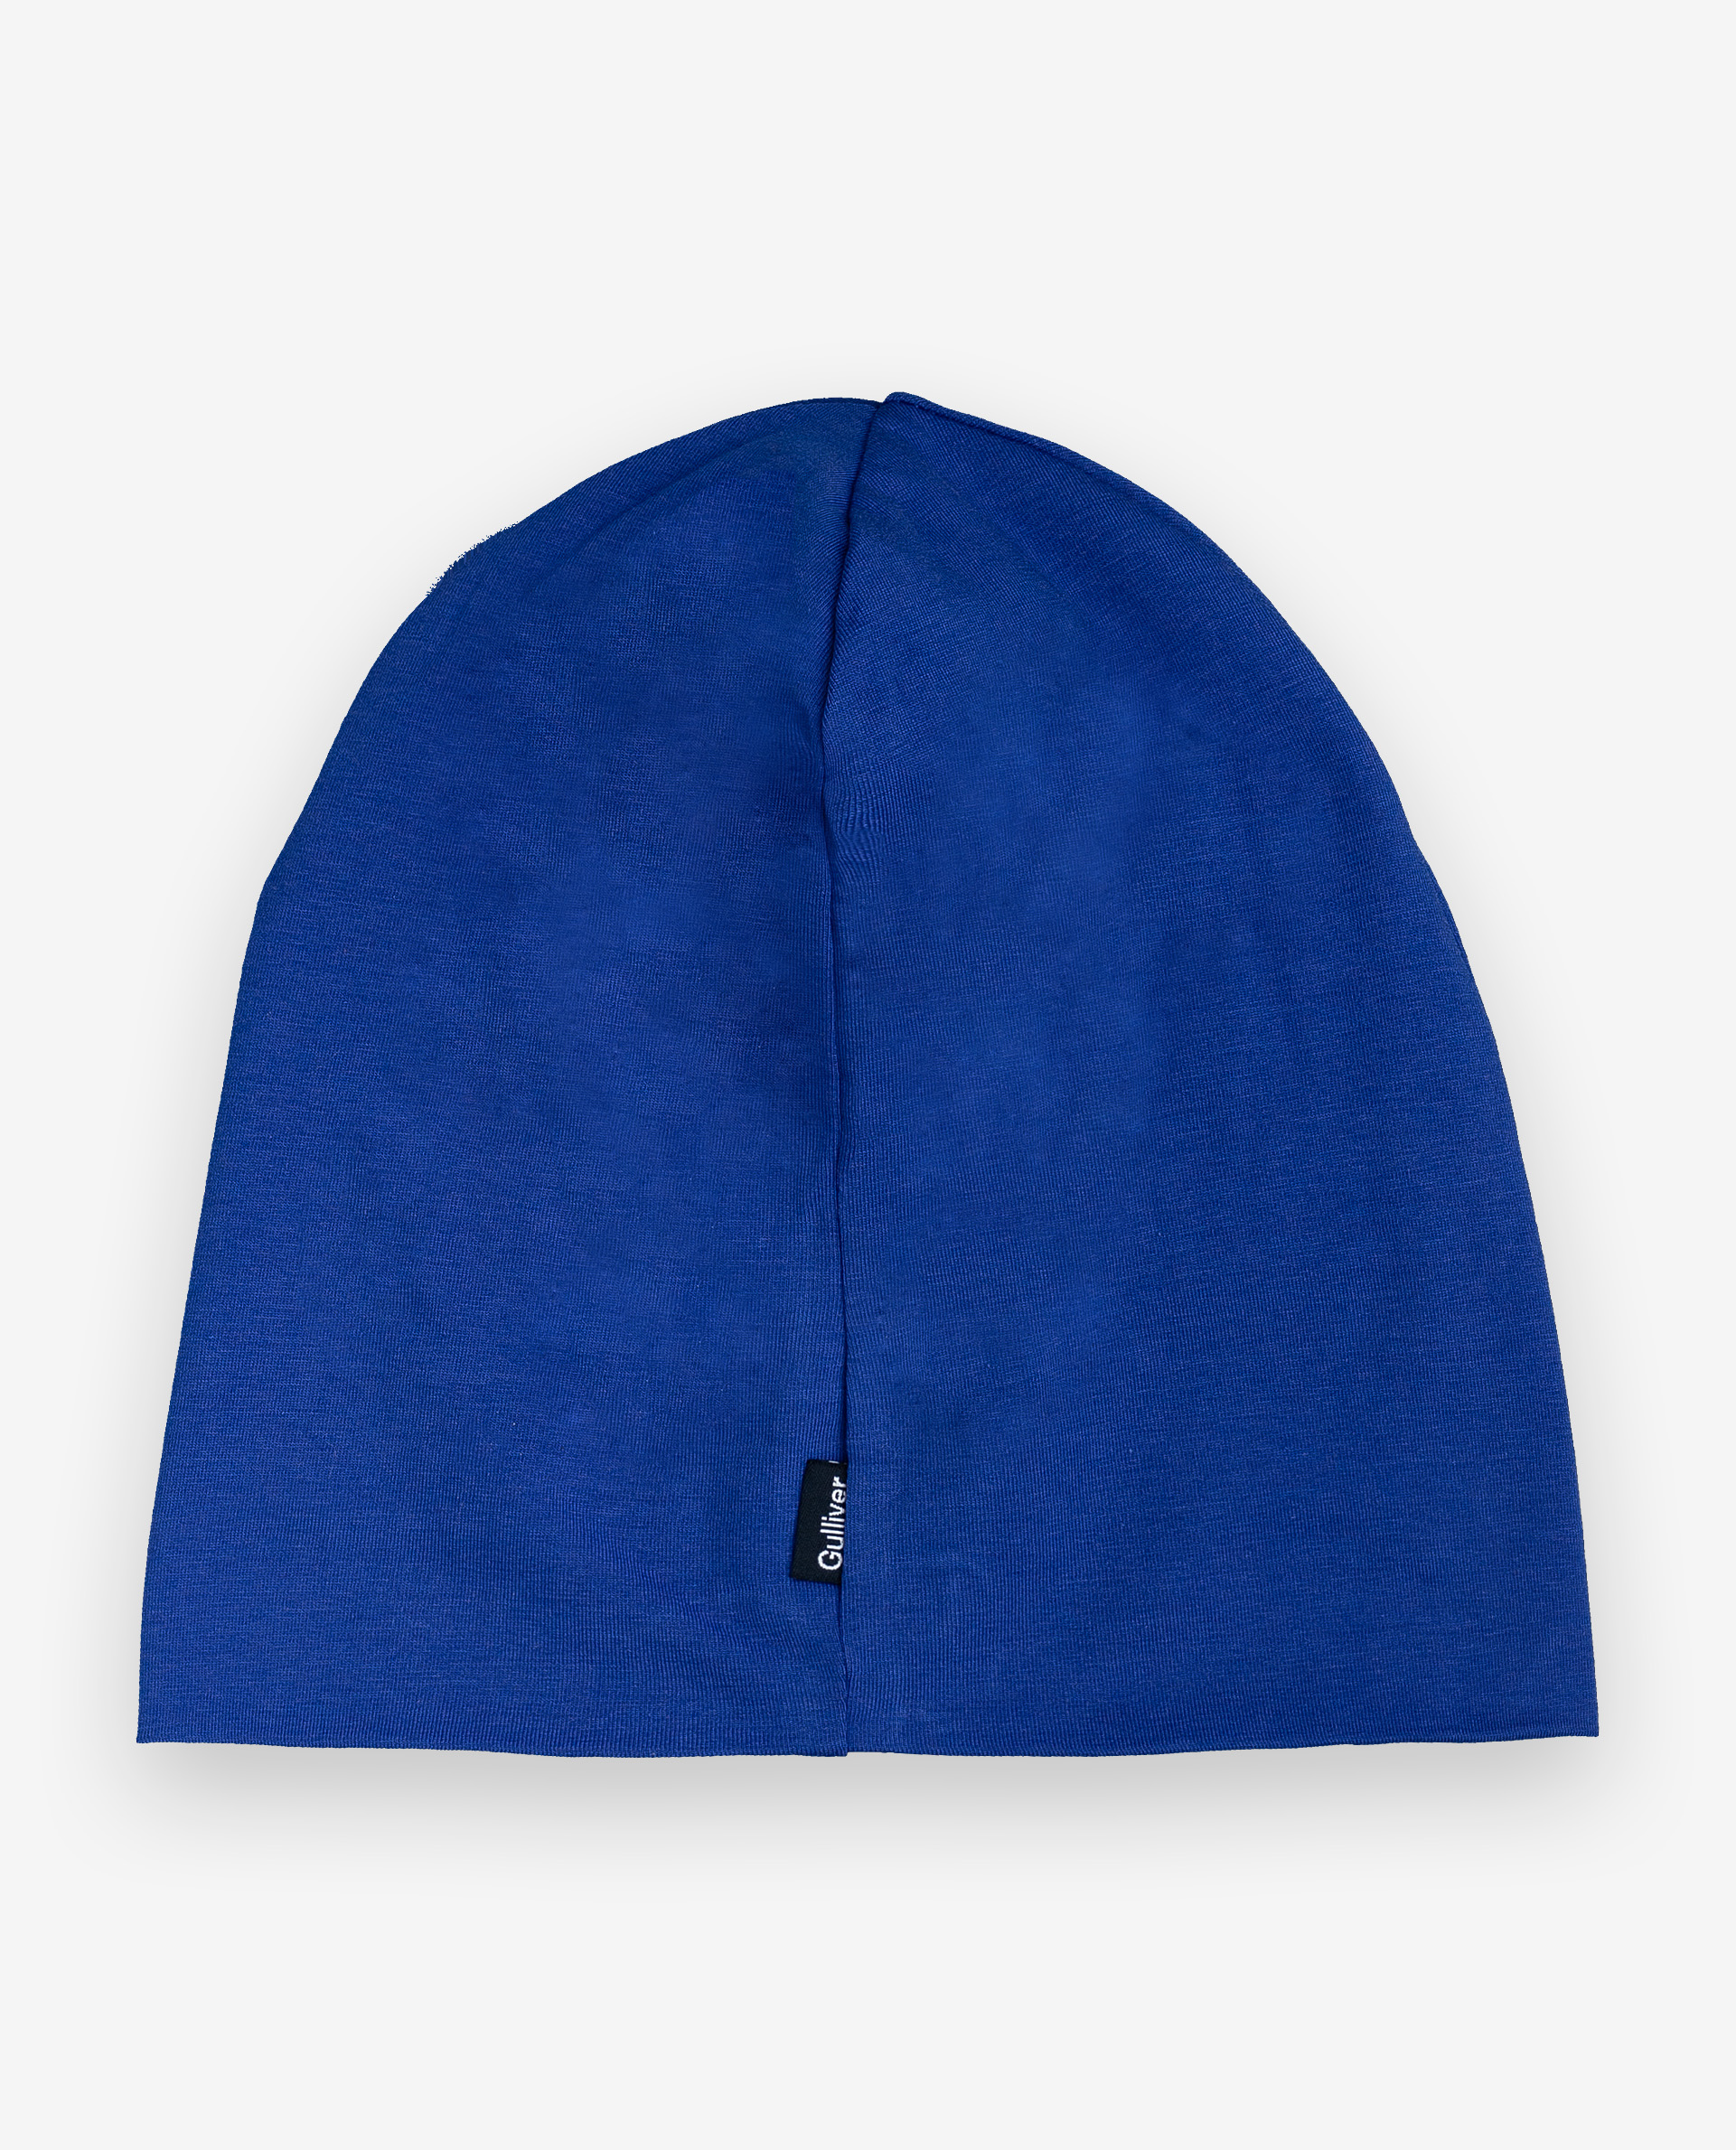 Синяя шапка с принтом Gulliver 12004BMC7302, размер 54 - фото 2